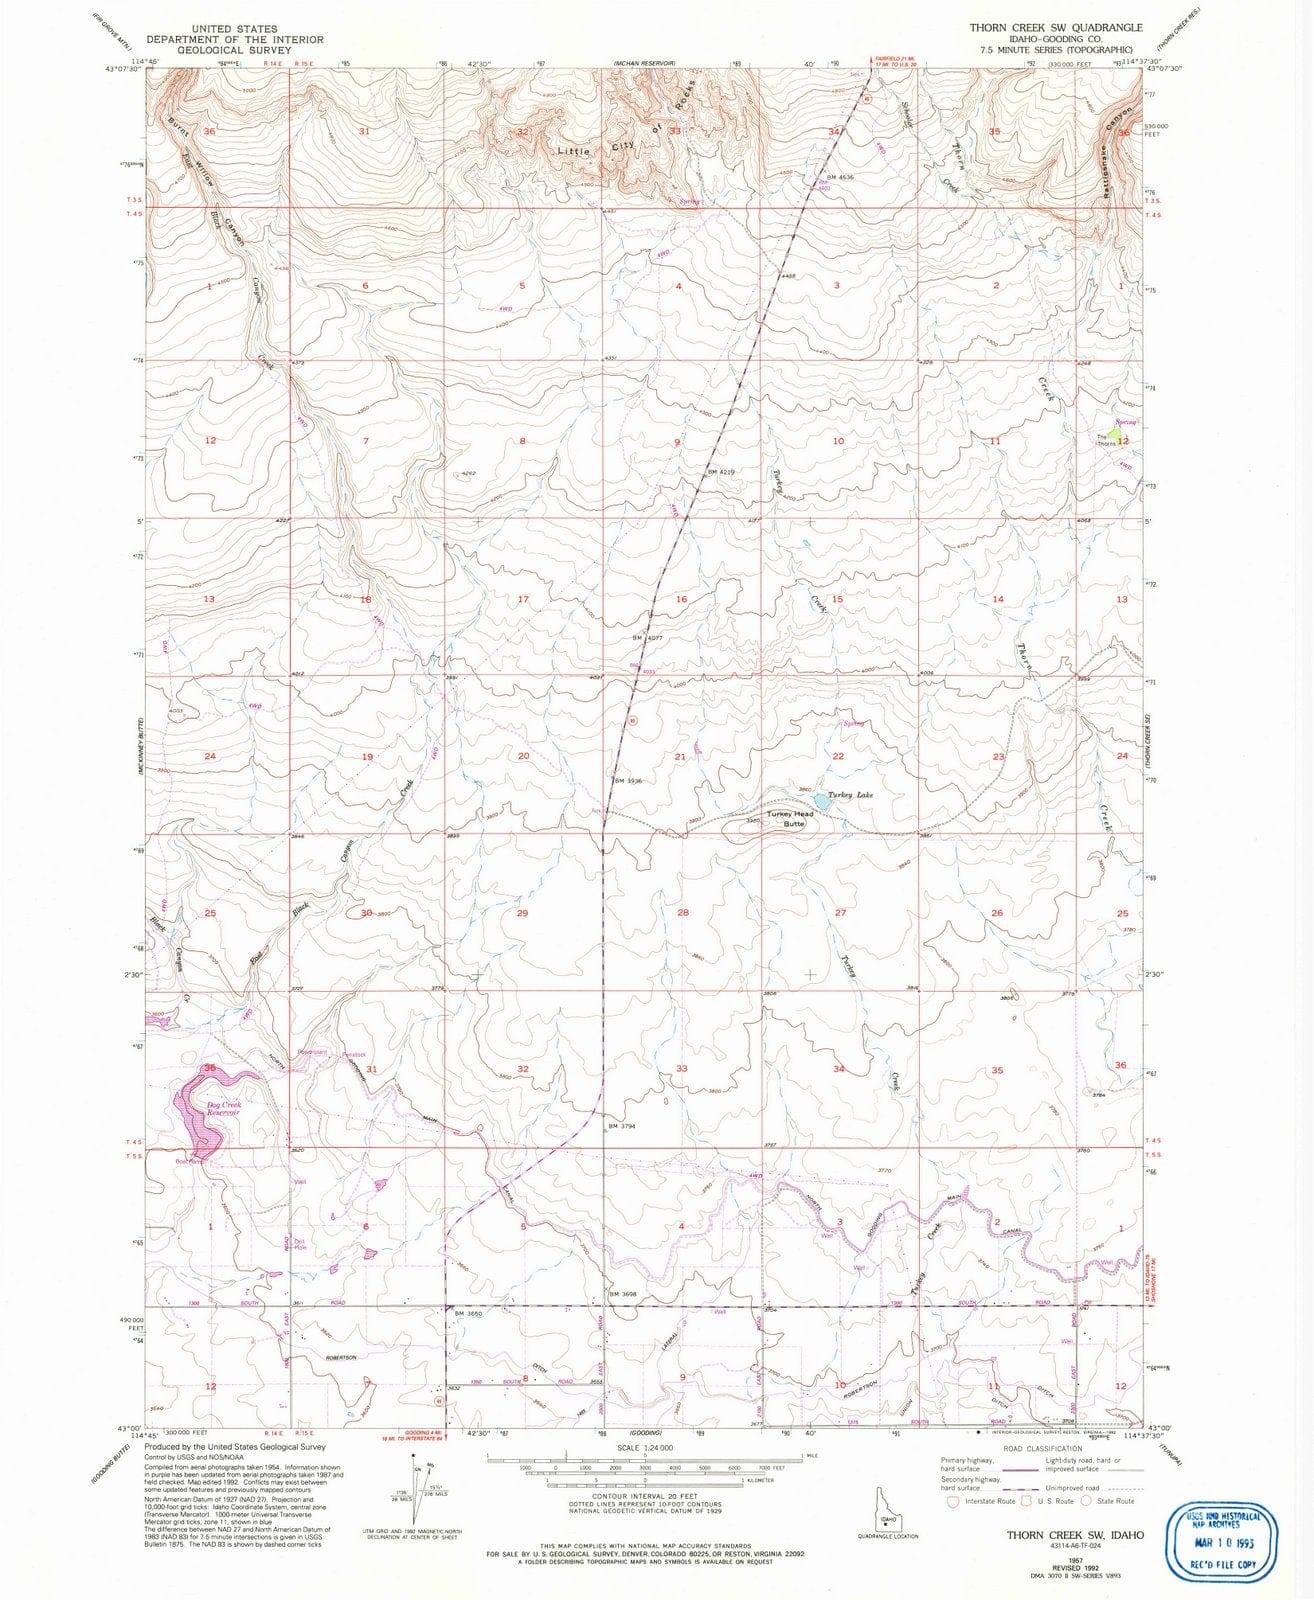 1957 Thorn Creek, ID - Idaho - USGS Topographic Map v2